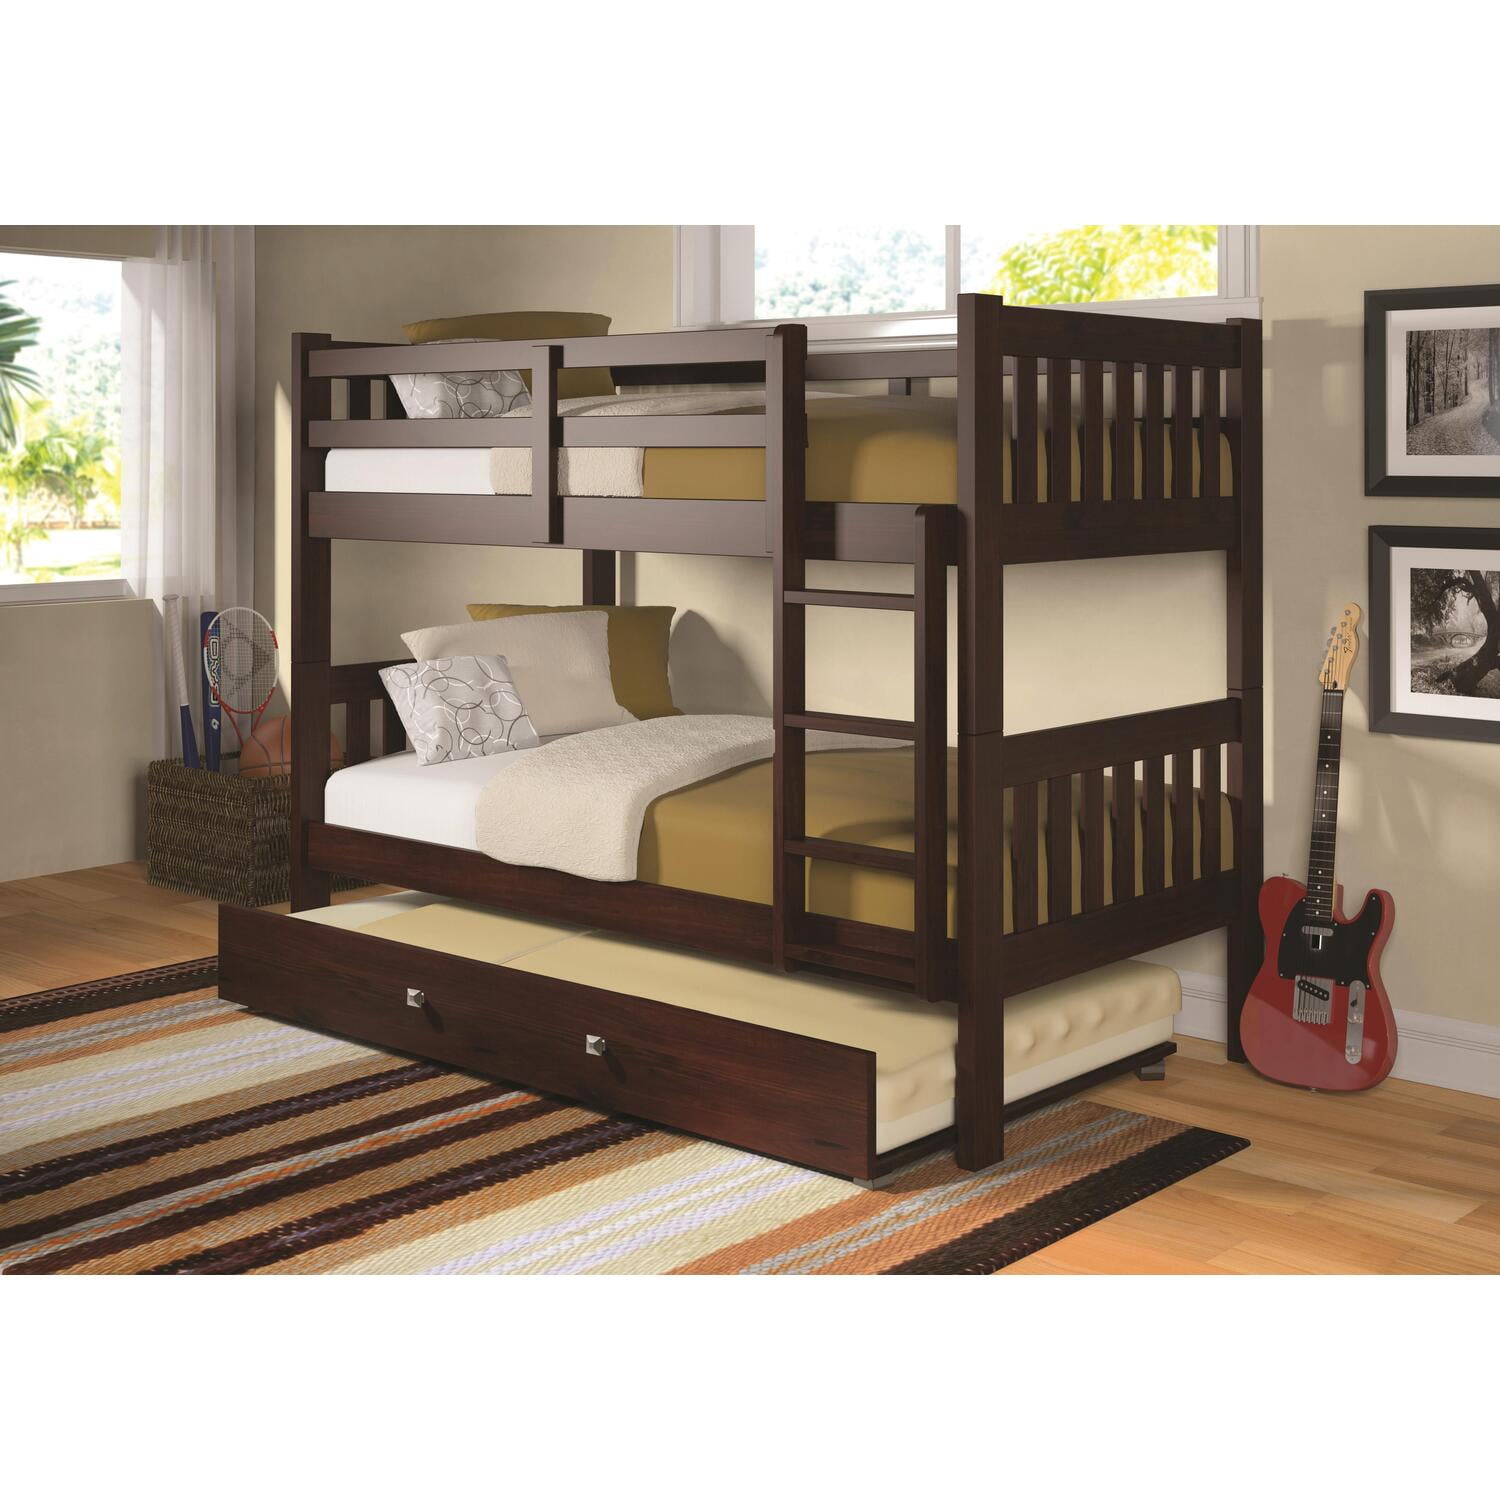 Donco Kids Mission Bunk Bed Color Dark, Sams Bunk Beds